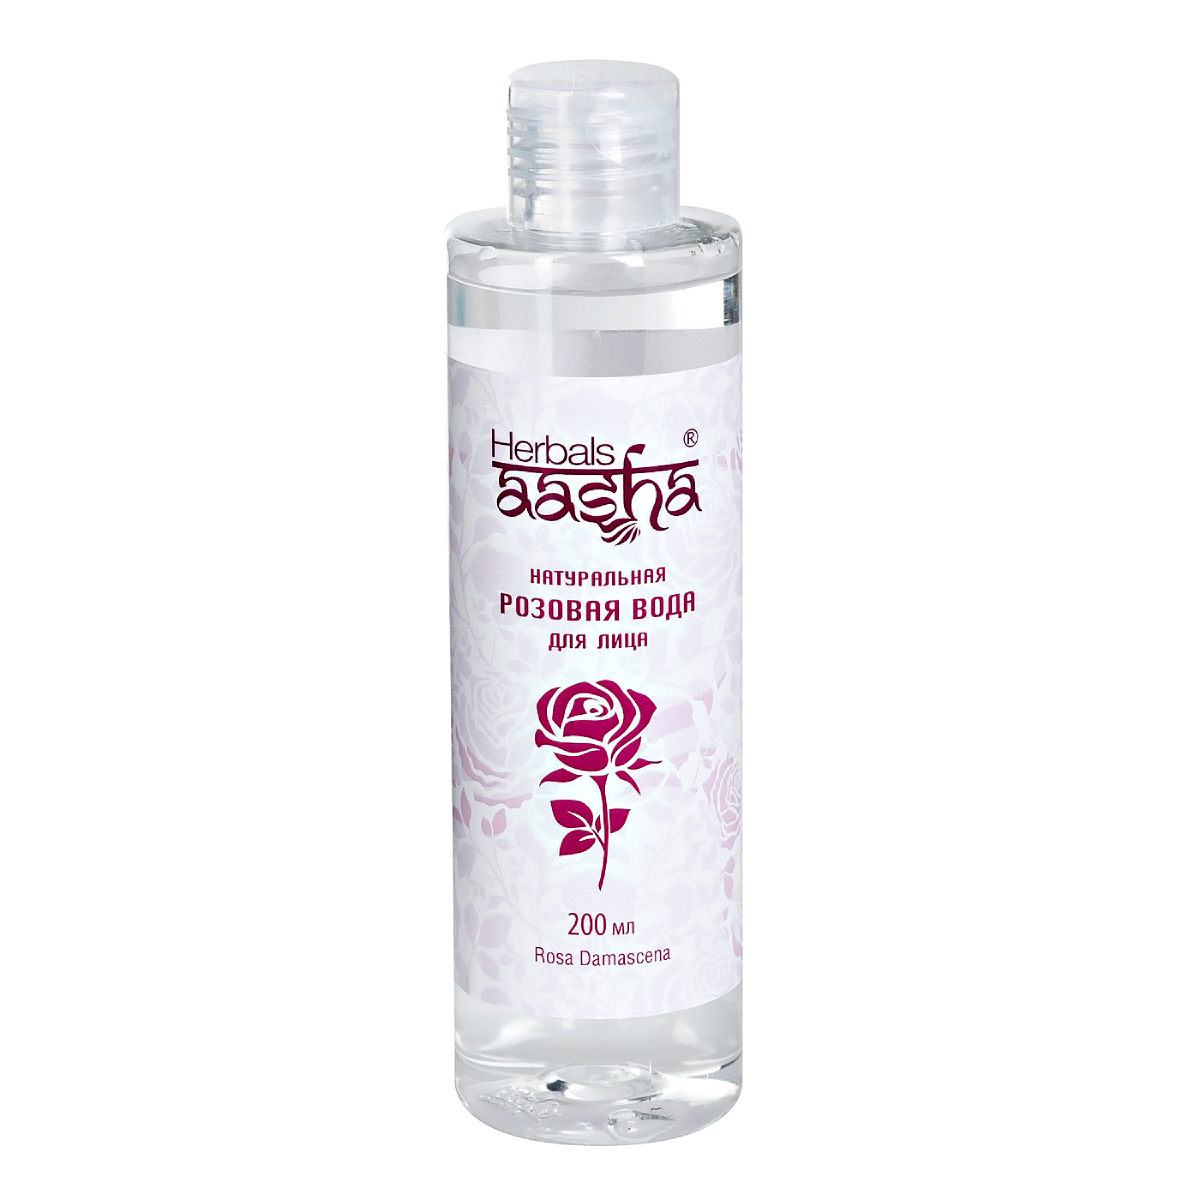 Натуральная розовая вода Aasha Herbals для лица, 200 мл очная вода для лица aasha herbals кокос 100 мл